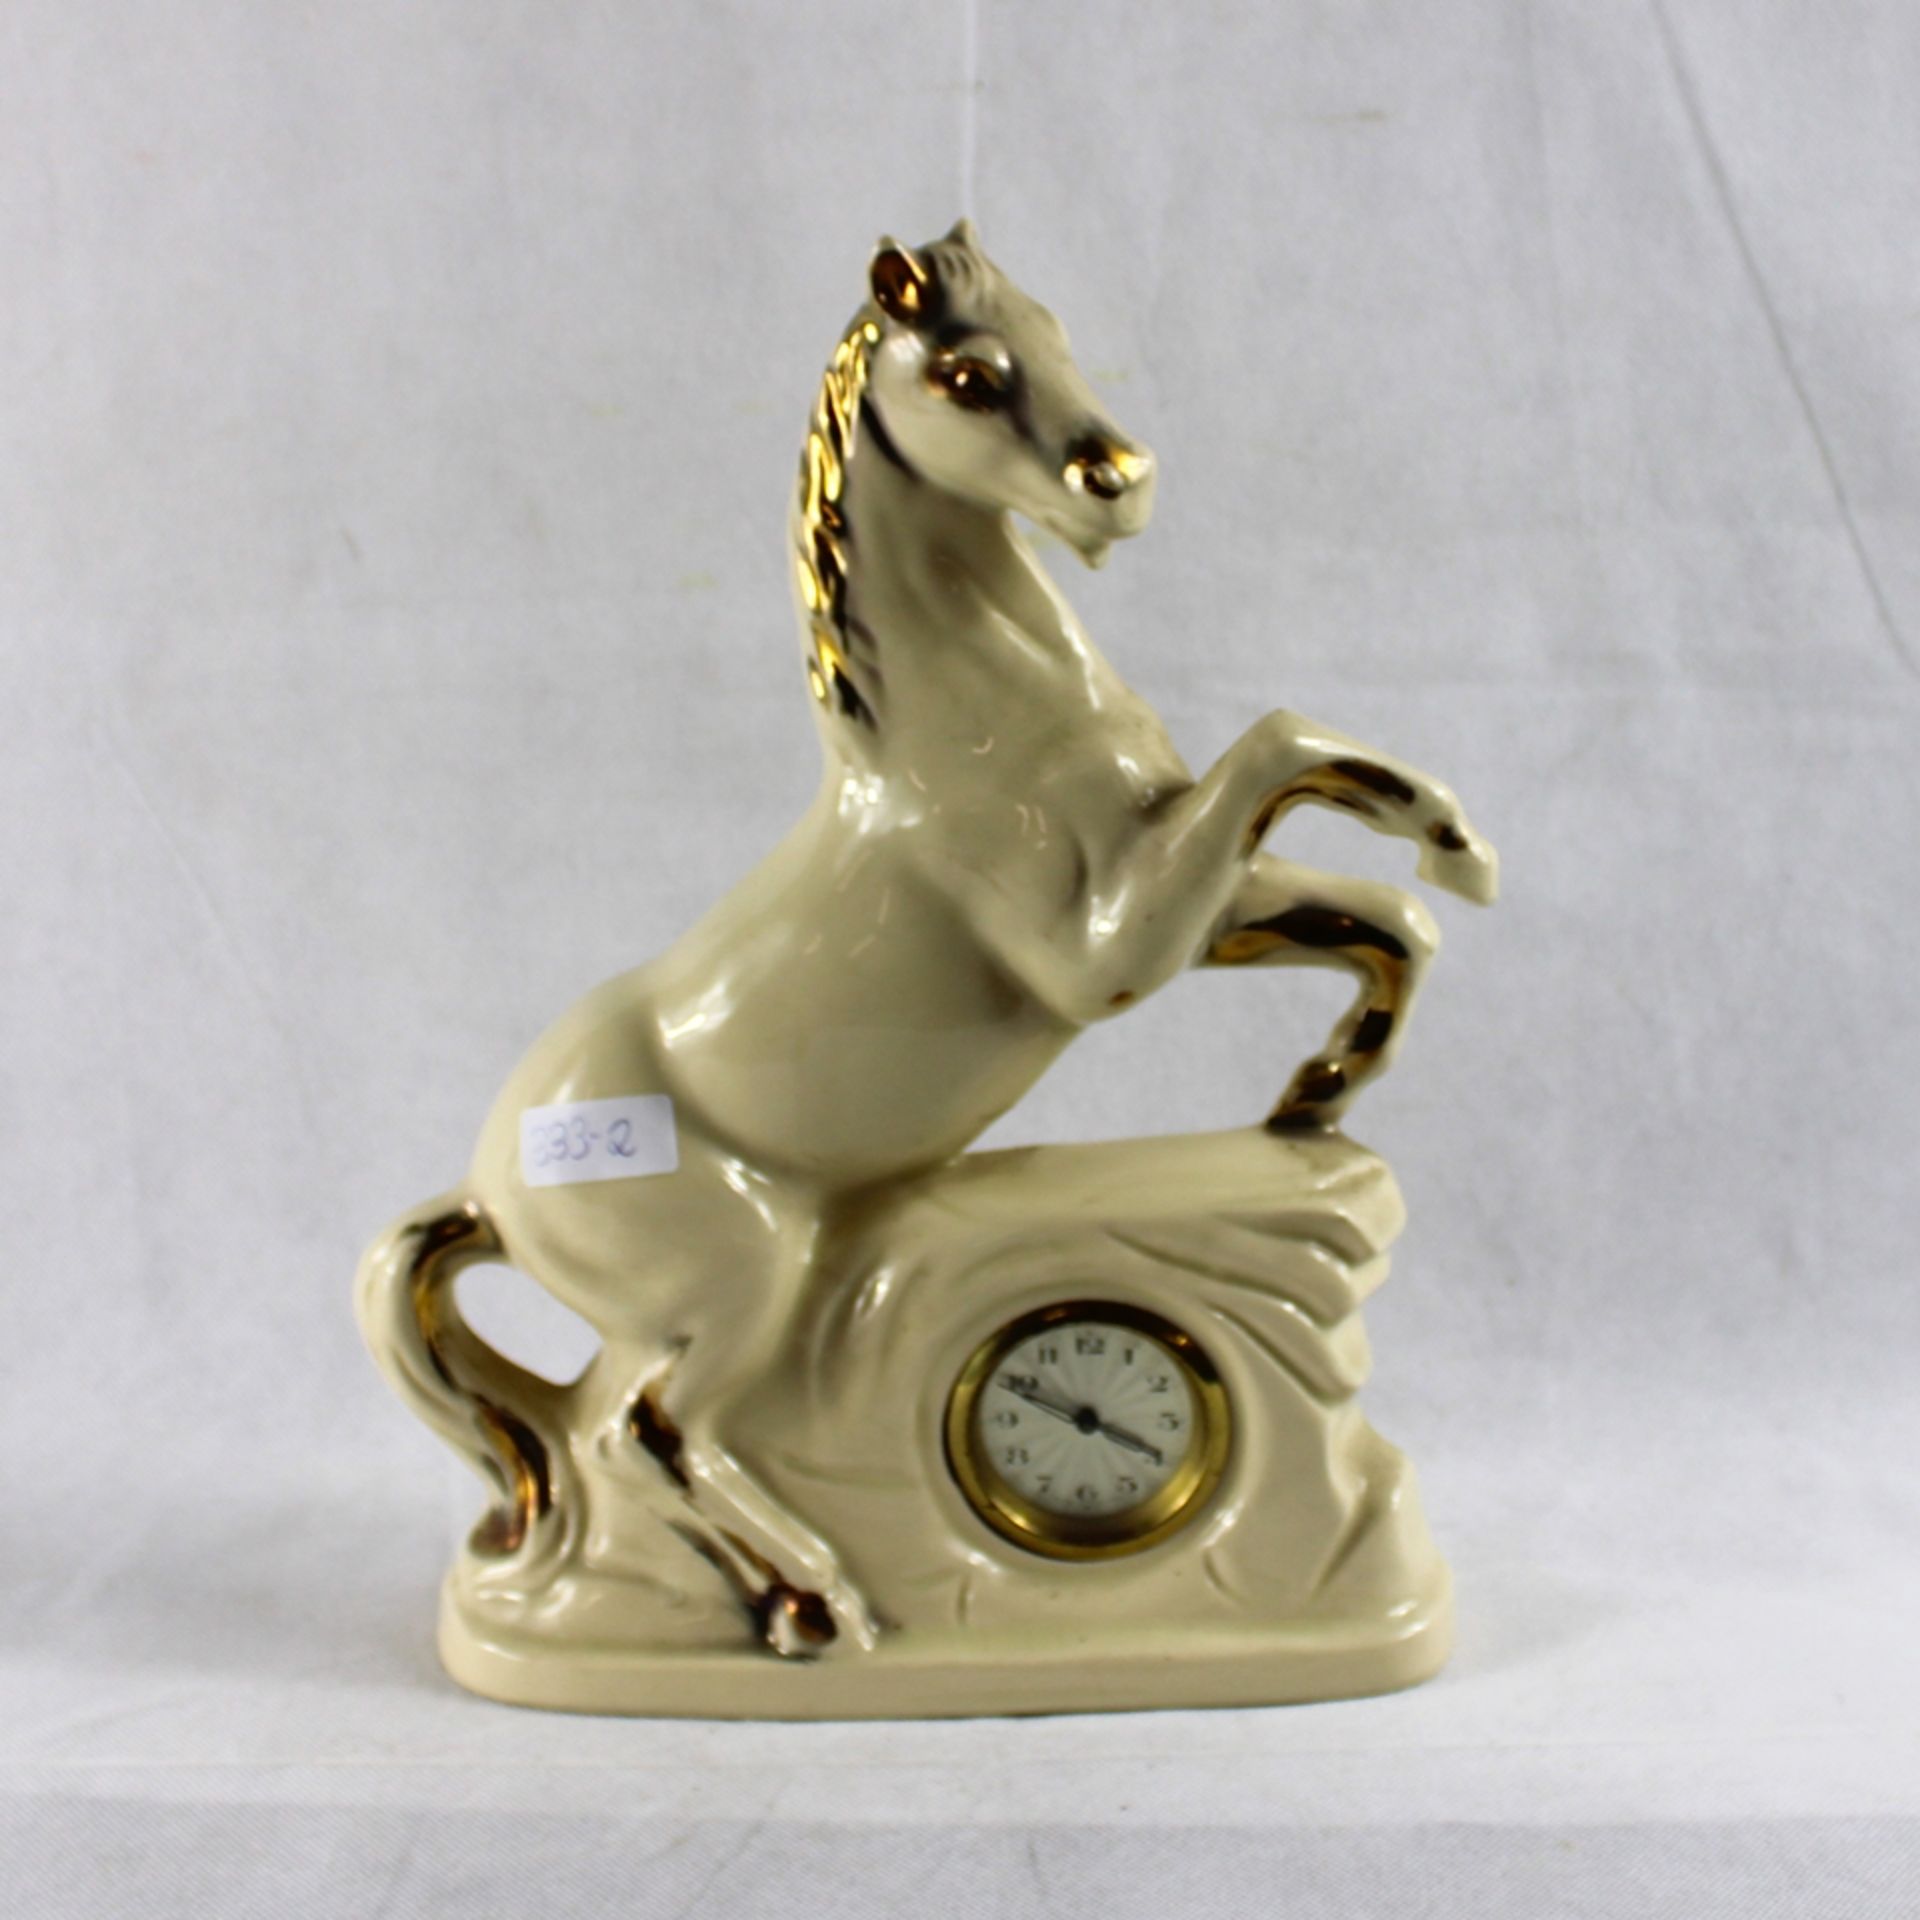 Pferd Porzellan Tischuhr ca. 24 x 33 cm, Uhr defekt